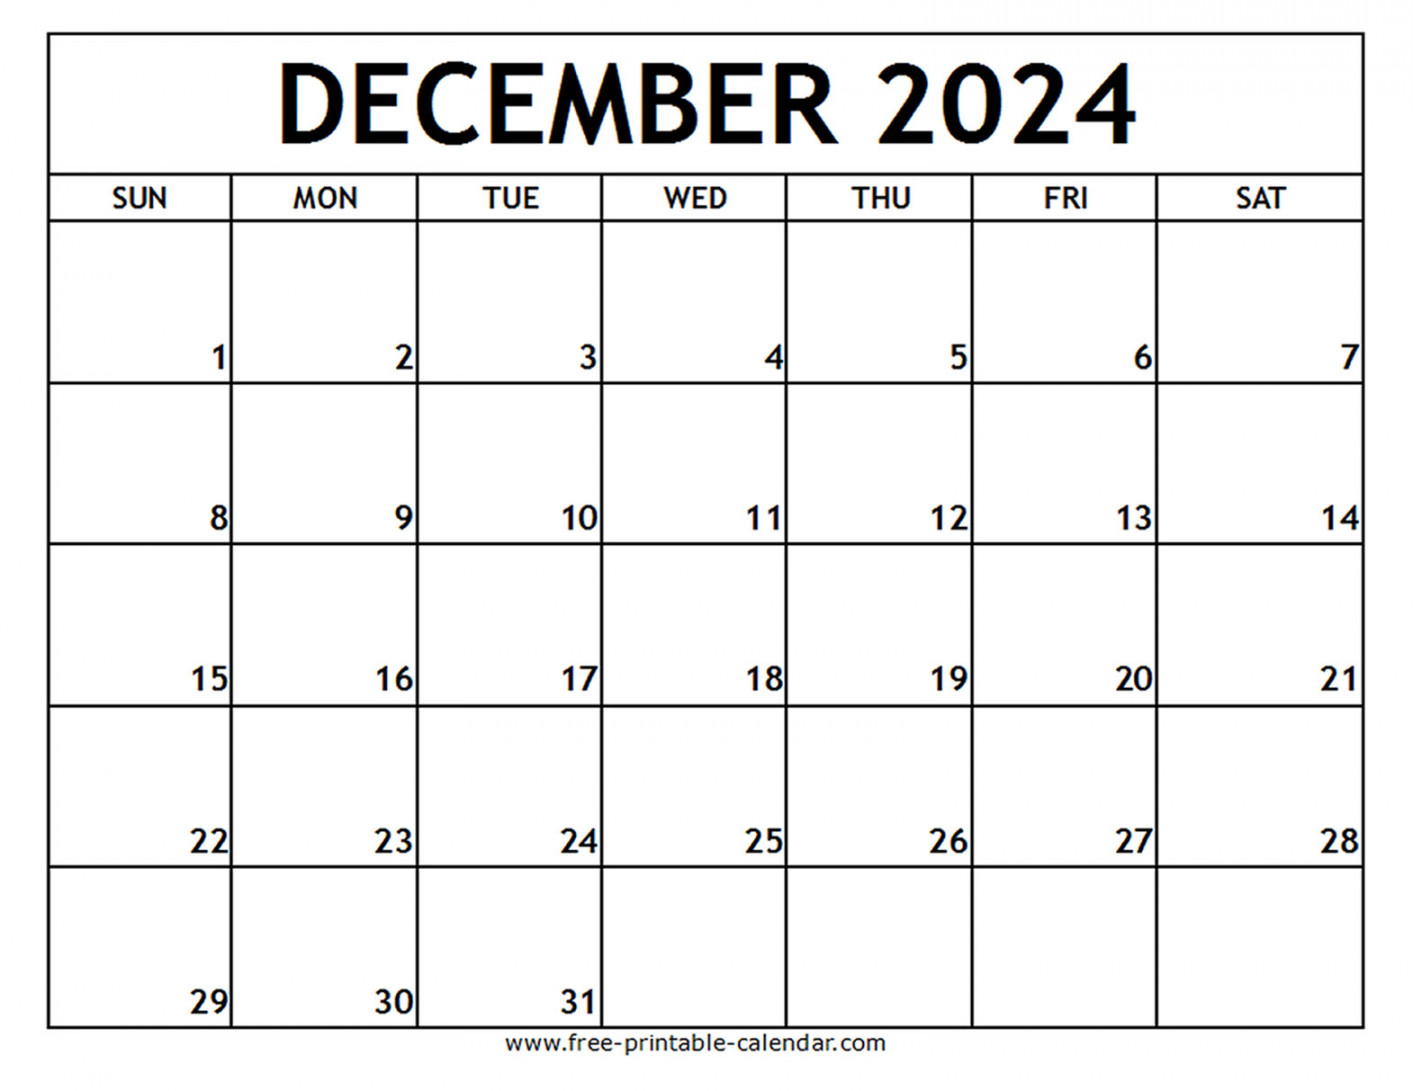 december printable calendar free printable calendar com 4